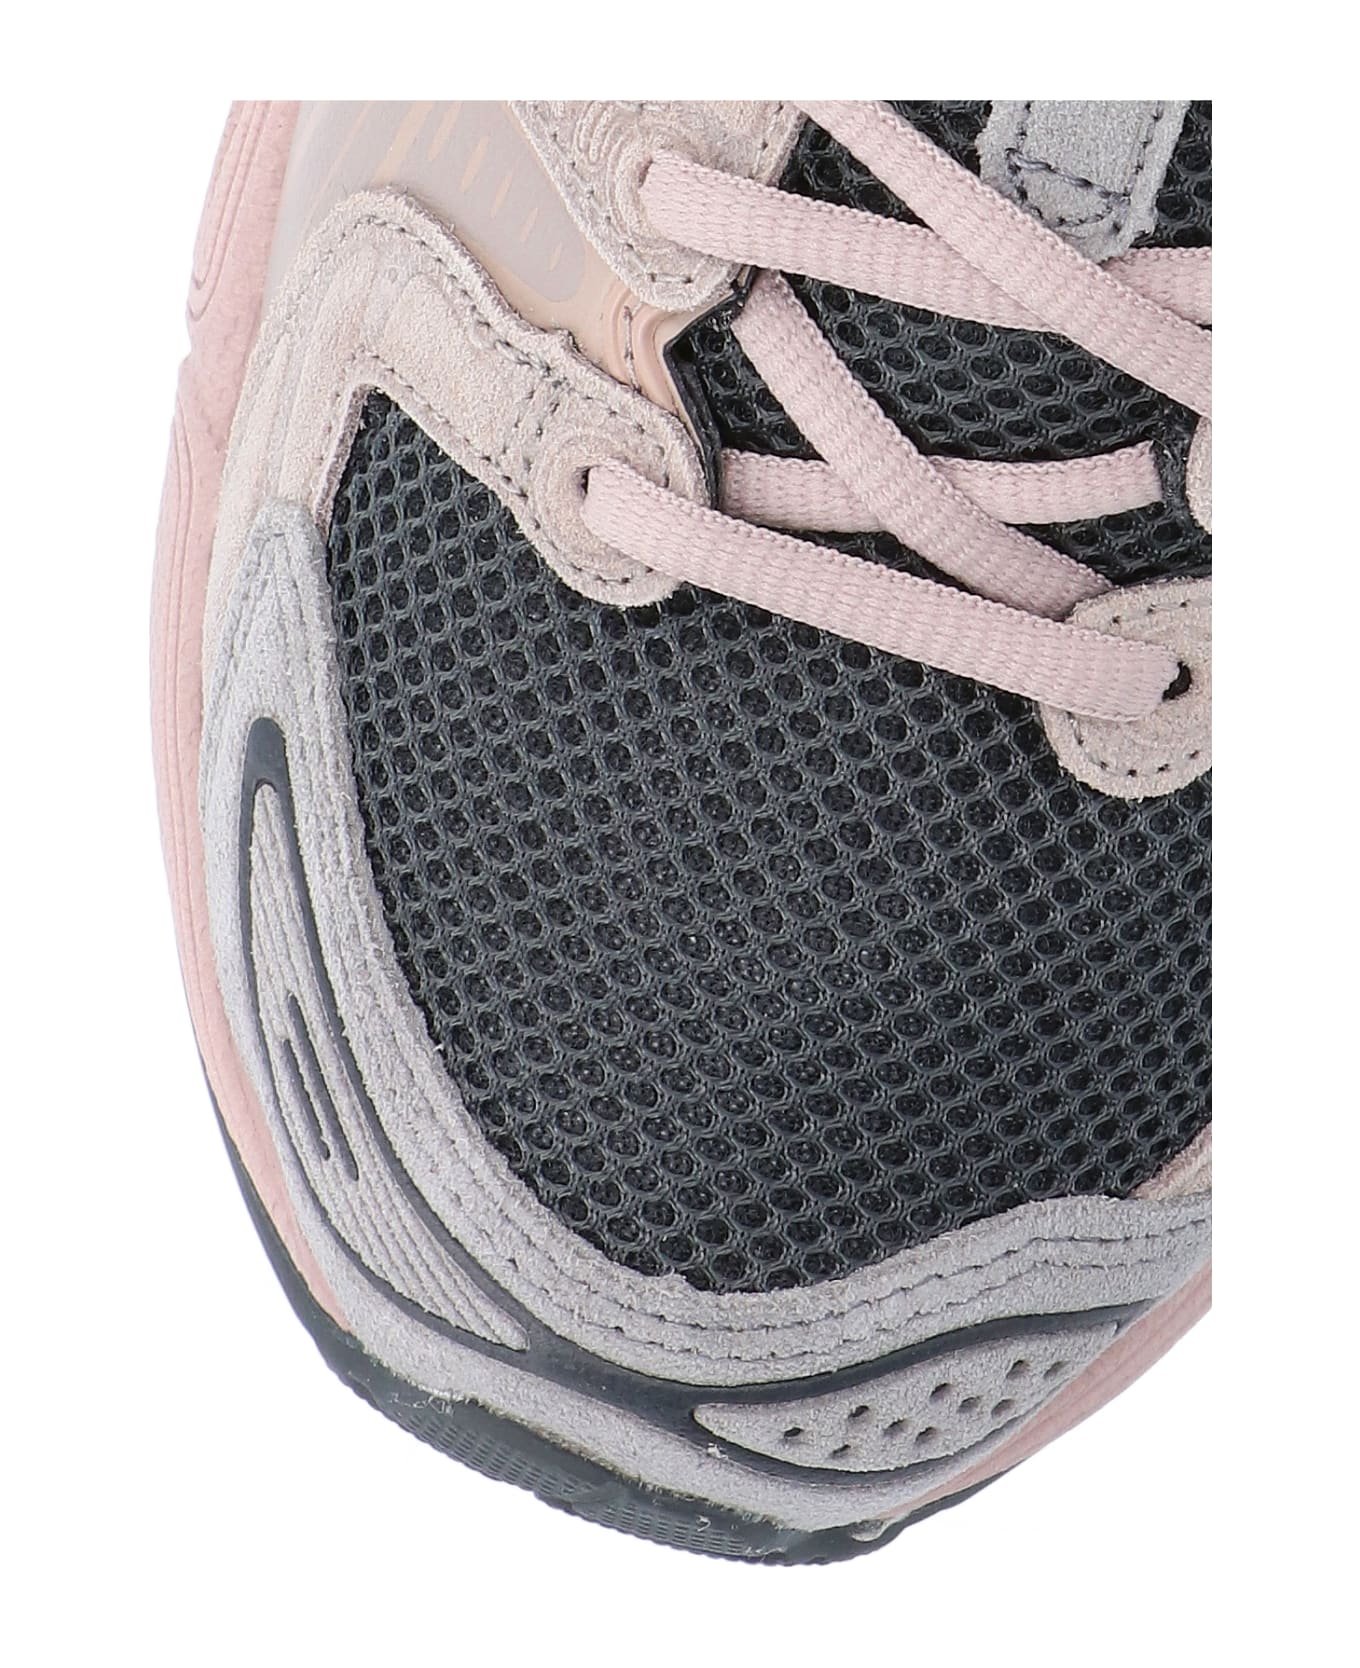 Asics "gel Nimbus 9" Sneakers - Gray